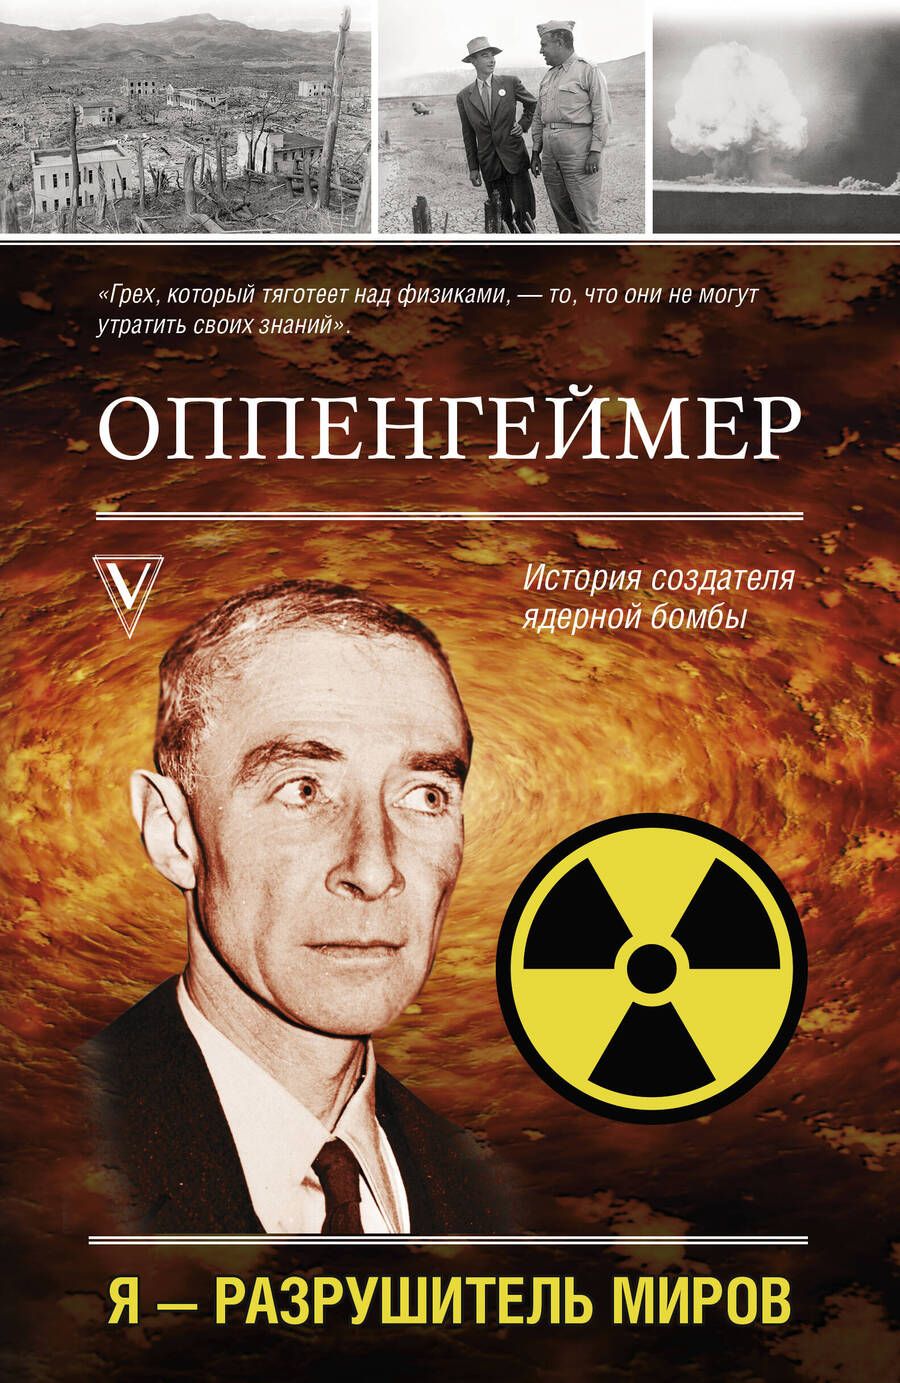 Обложка книги "Эйдельштейн: Оппенгеймер. История создателя ядерной бомбы"